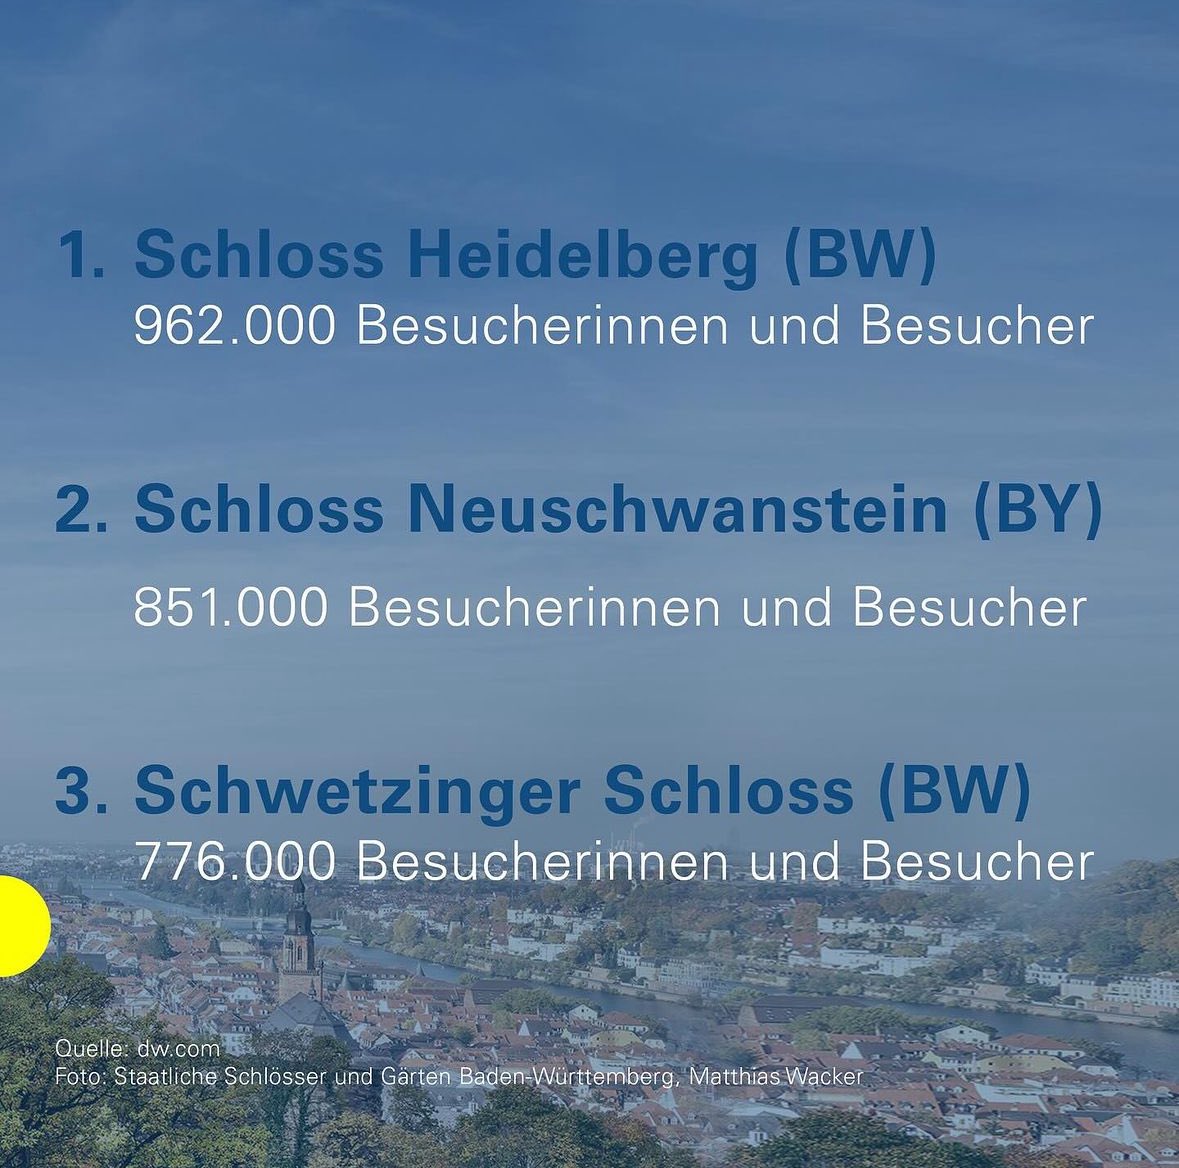 Tolle Auszeichnung für unsere @Schloesser_BaWu! Zwei der drei beliebtesten Schlösser und Burgen stehen bei uns im Land. Mehr Infos 👉 dw.com/de/top-10-das-…